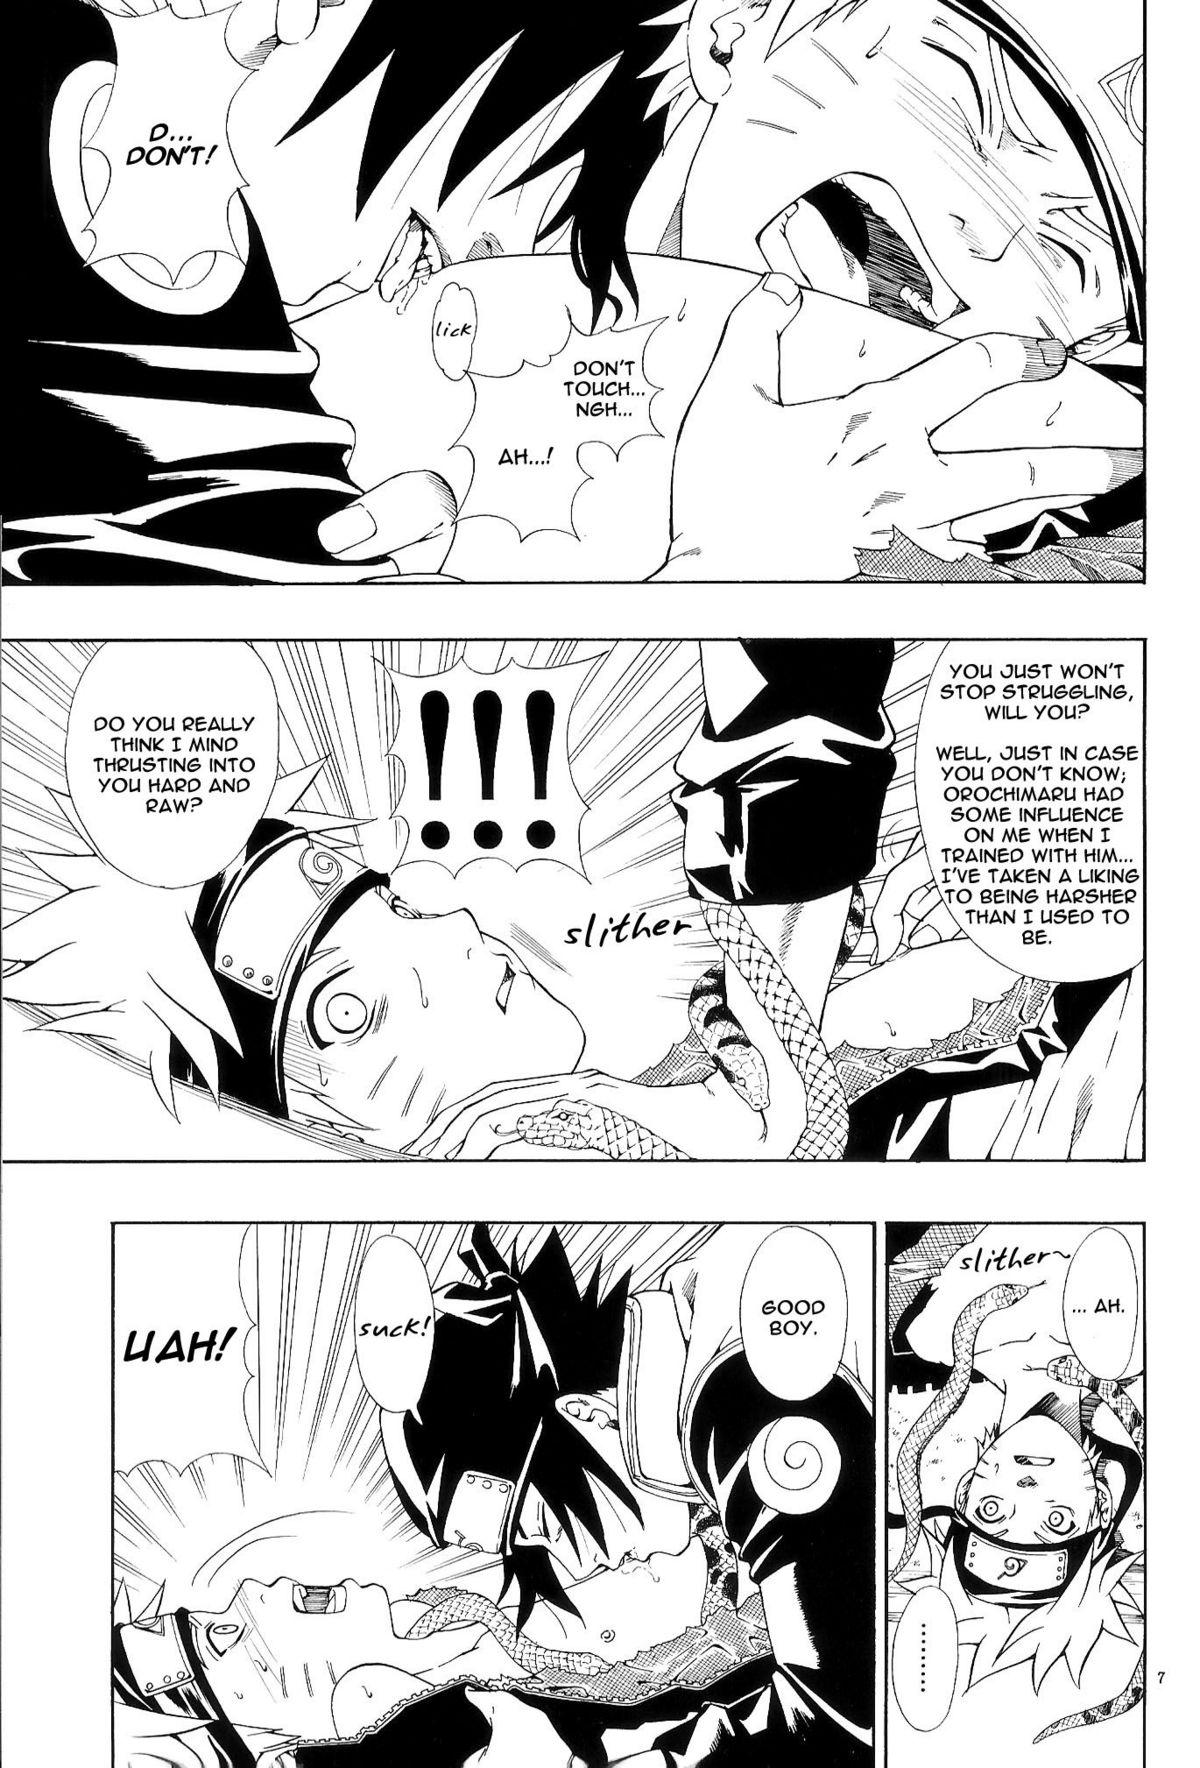 ERO ERO²: Volume 1.5  (NARUTO) [Sasuke X Naruto] YAOI -ENG- 5